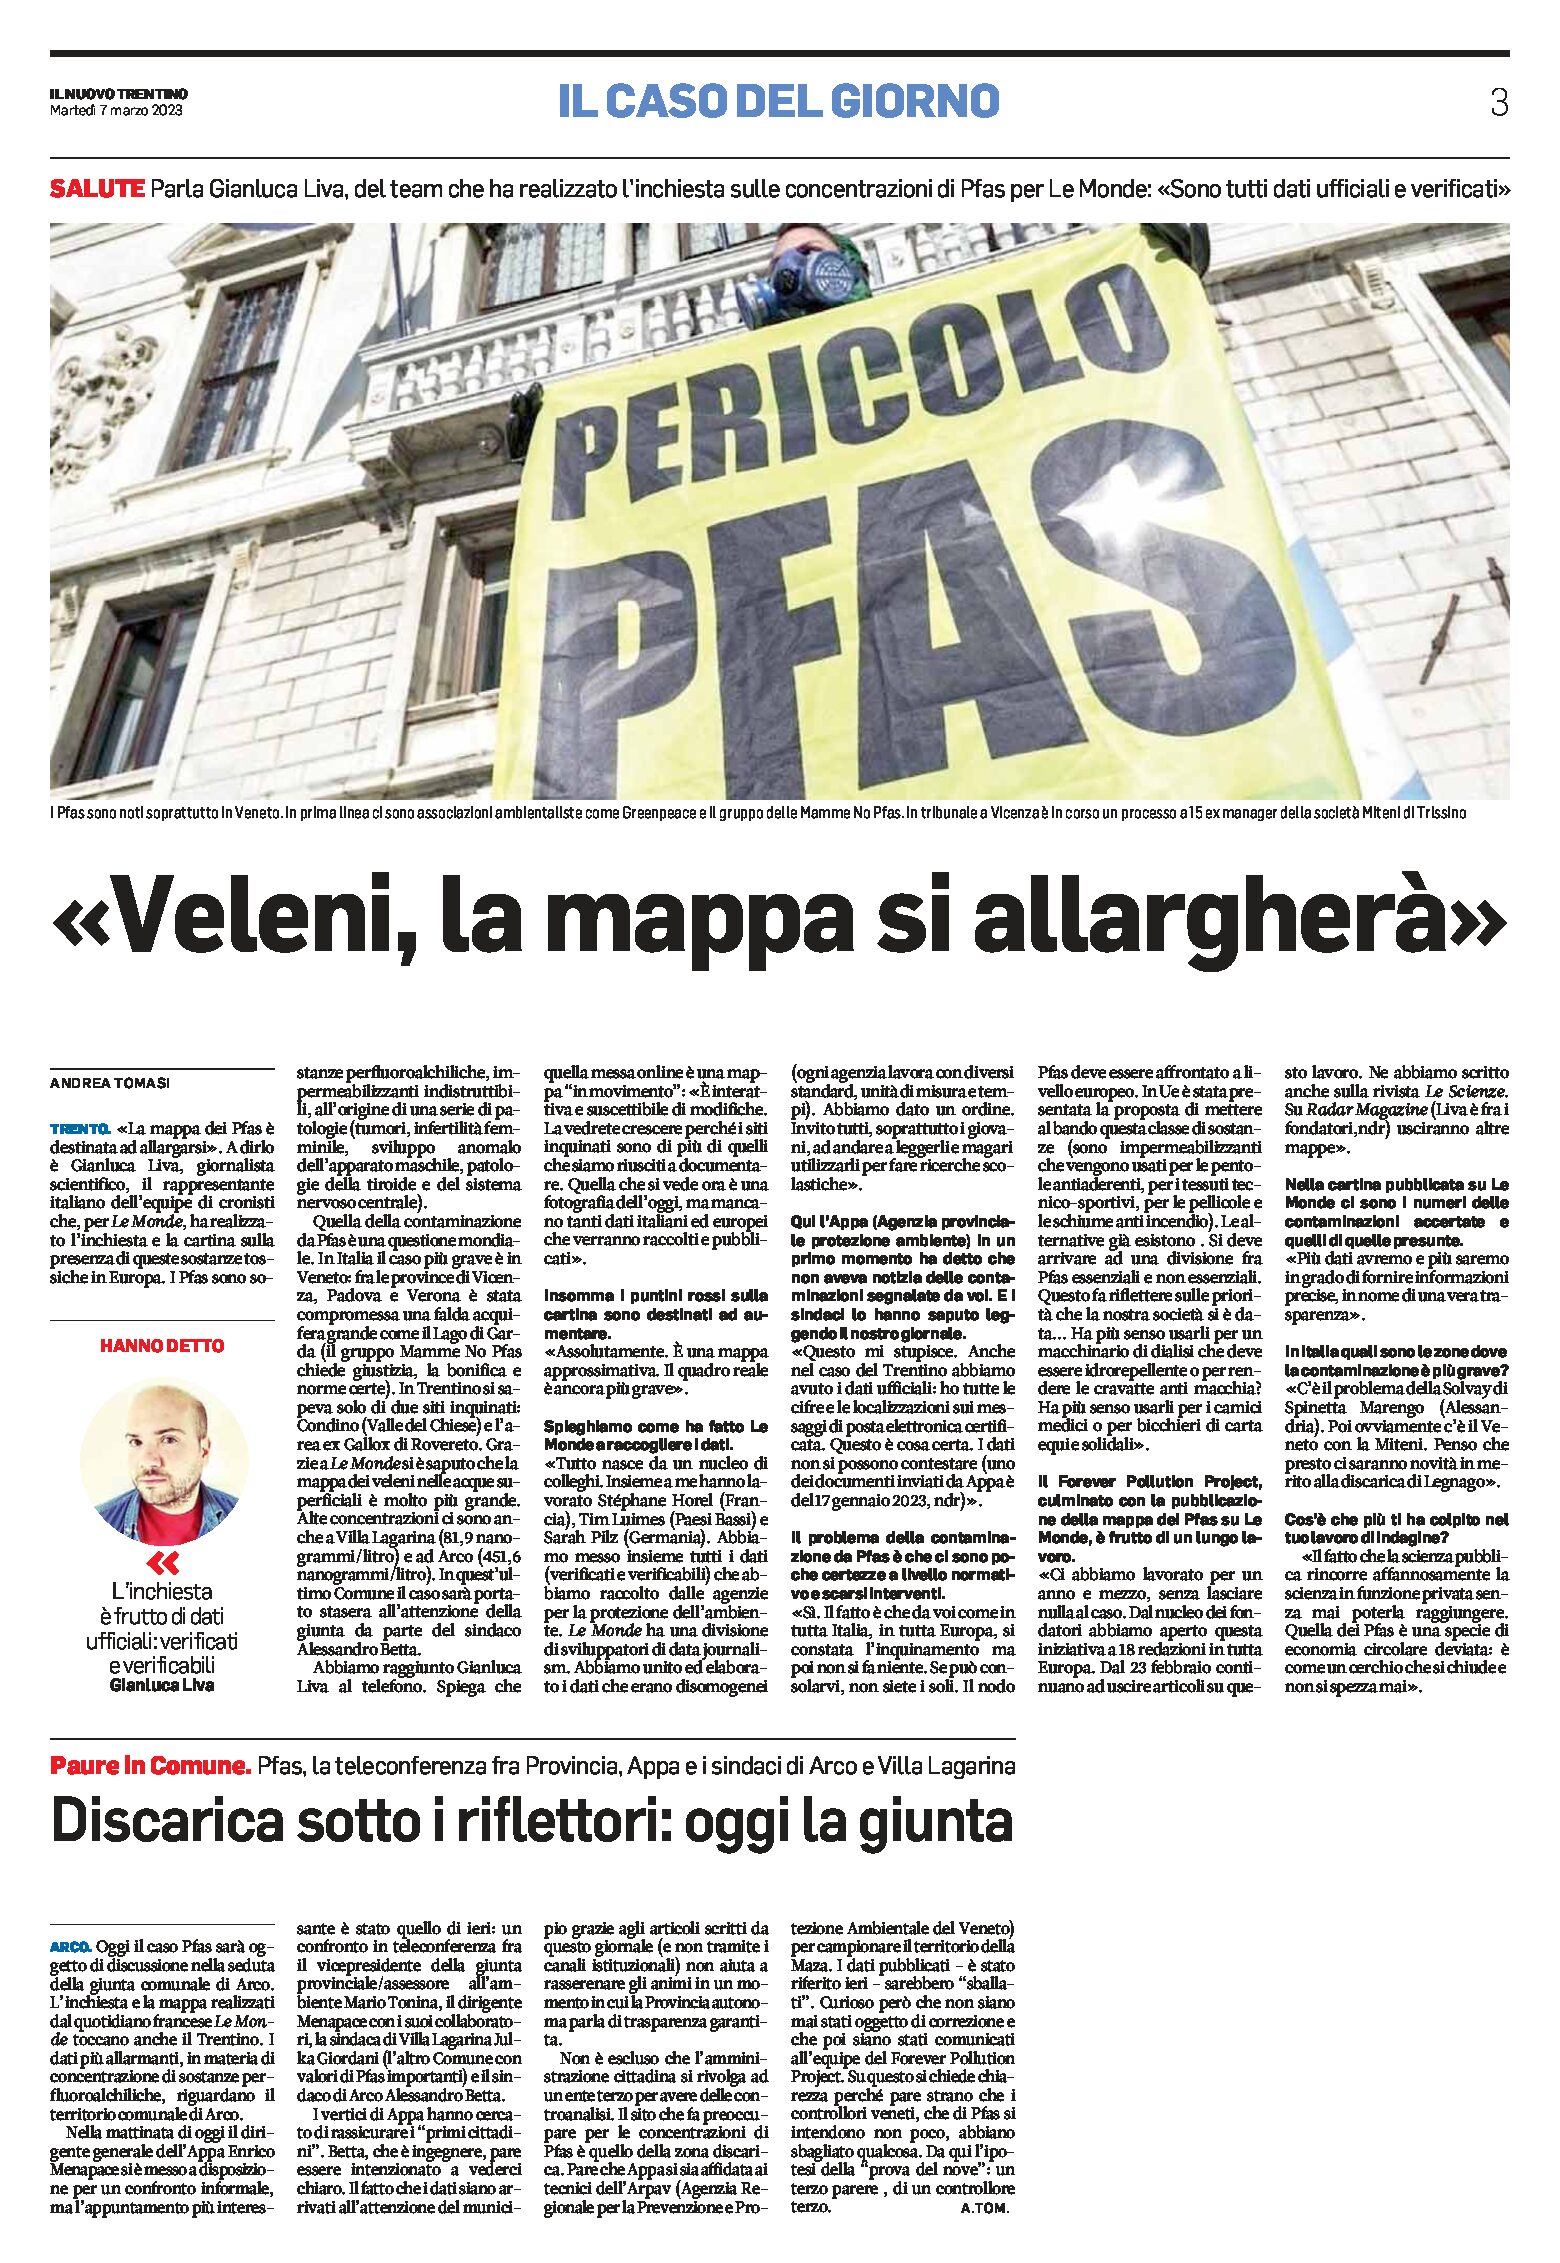 Trentino, veleni: la mappa Pfas si allargherà. intervista a Liva che ha realizzato l’inchiesta per Le Monde